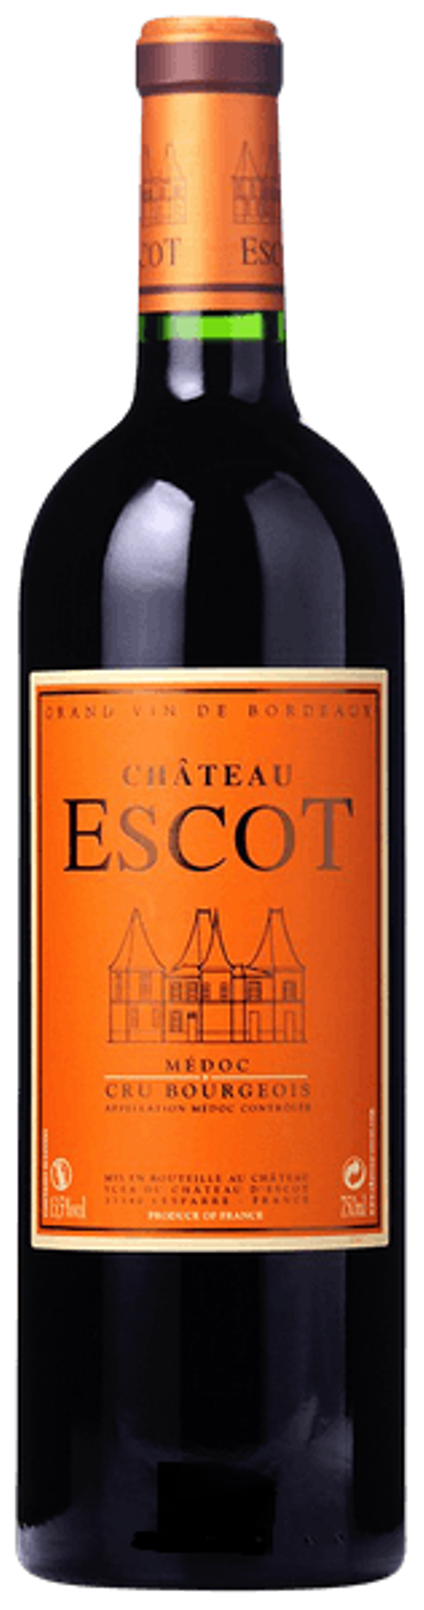 Wooden Case - Chateau Escot - 2002, 2012, 2016